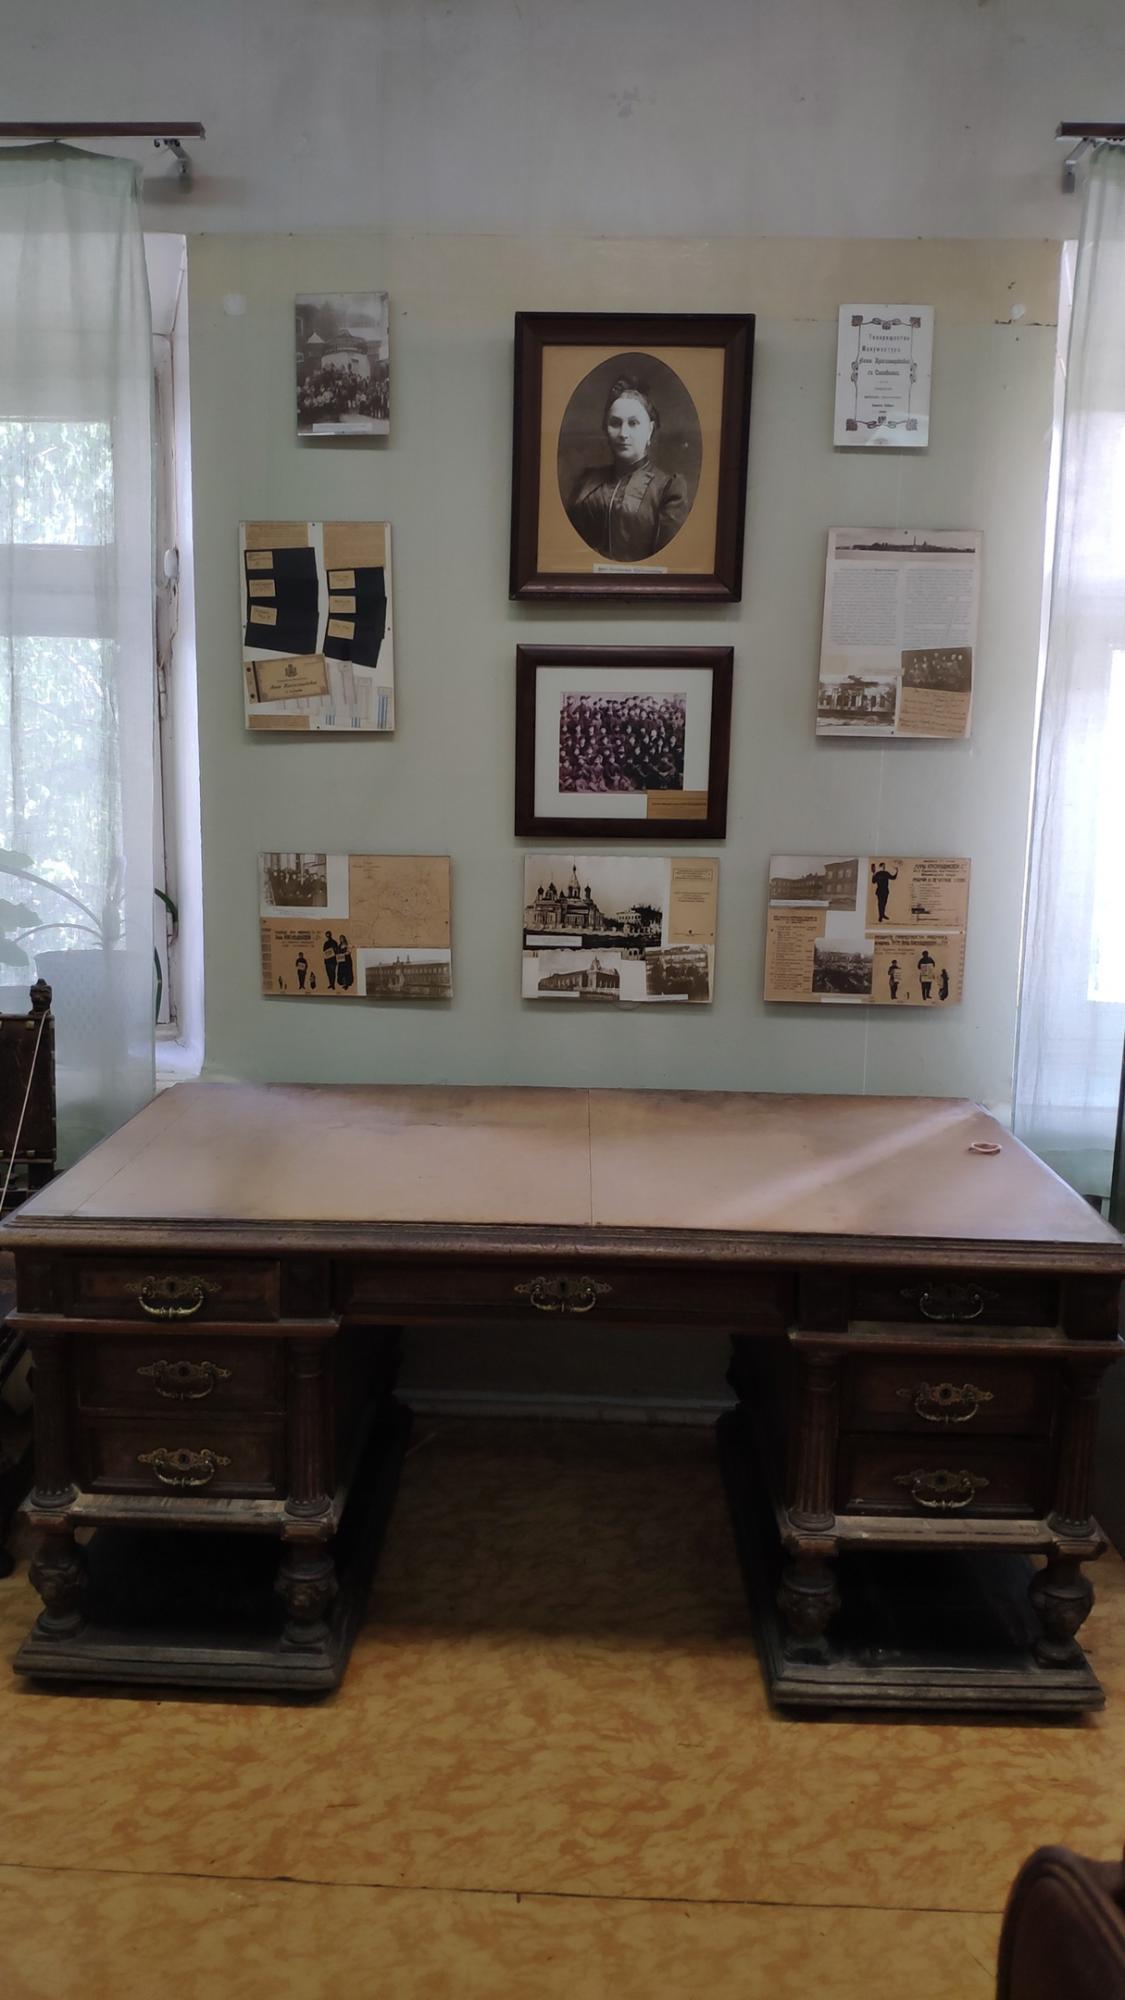 Благодаря компании Barnes International Moscow в нашем Музее появился новый экспонат - письменный стол из семьи Петра Михайловича Красильщикова!